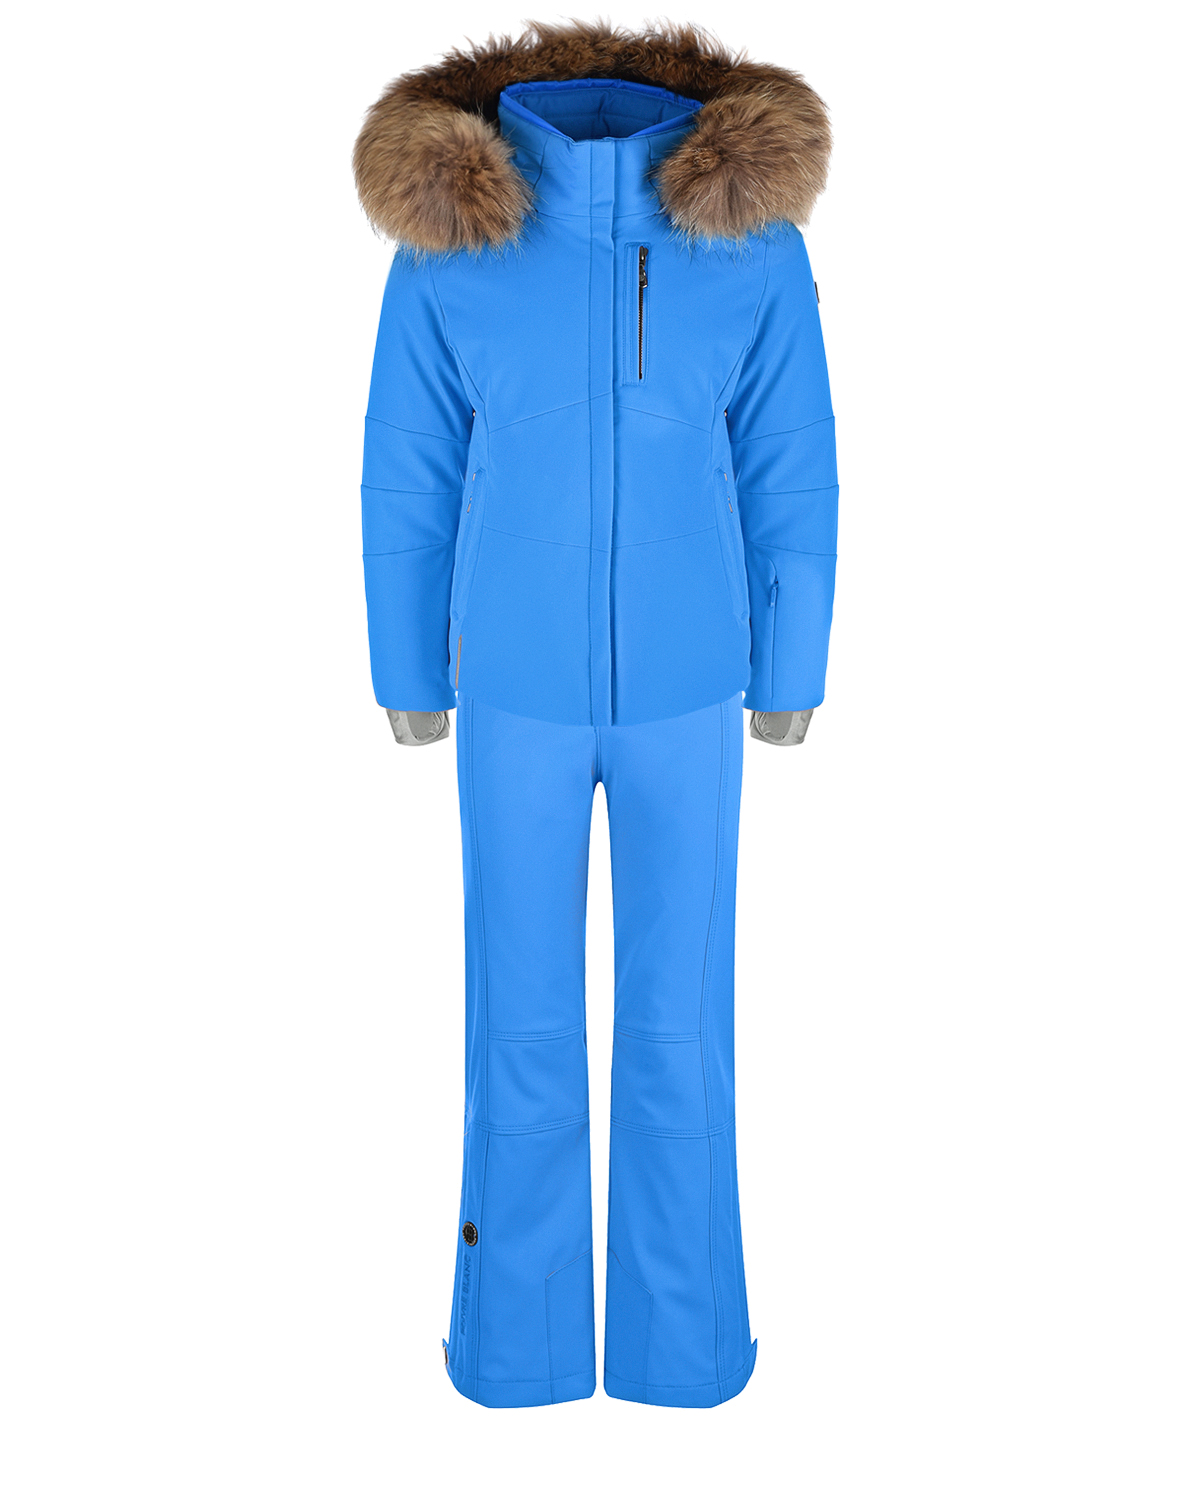 Комплект: куртка и брюки, голубой Poivre Blanc детский, размер 128